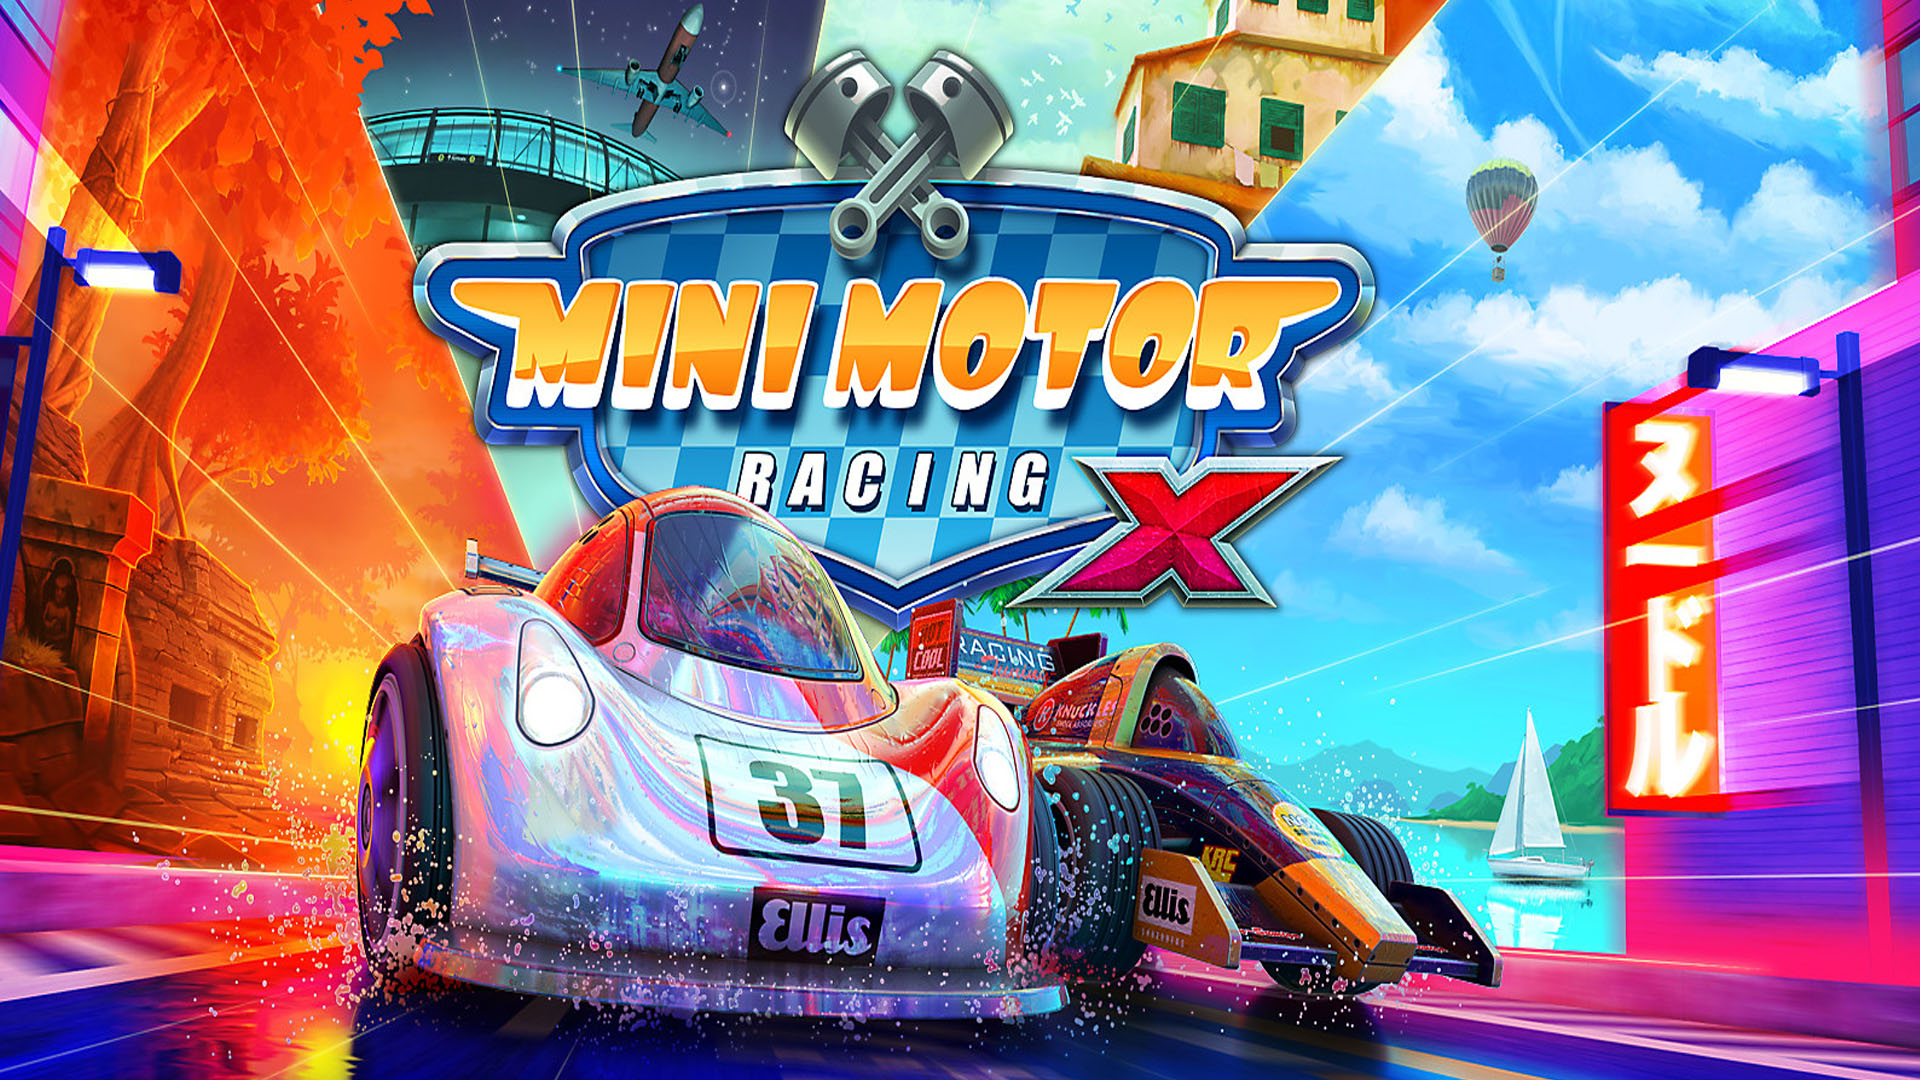 mini motor racing x trophy guide